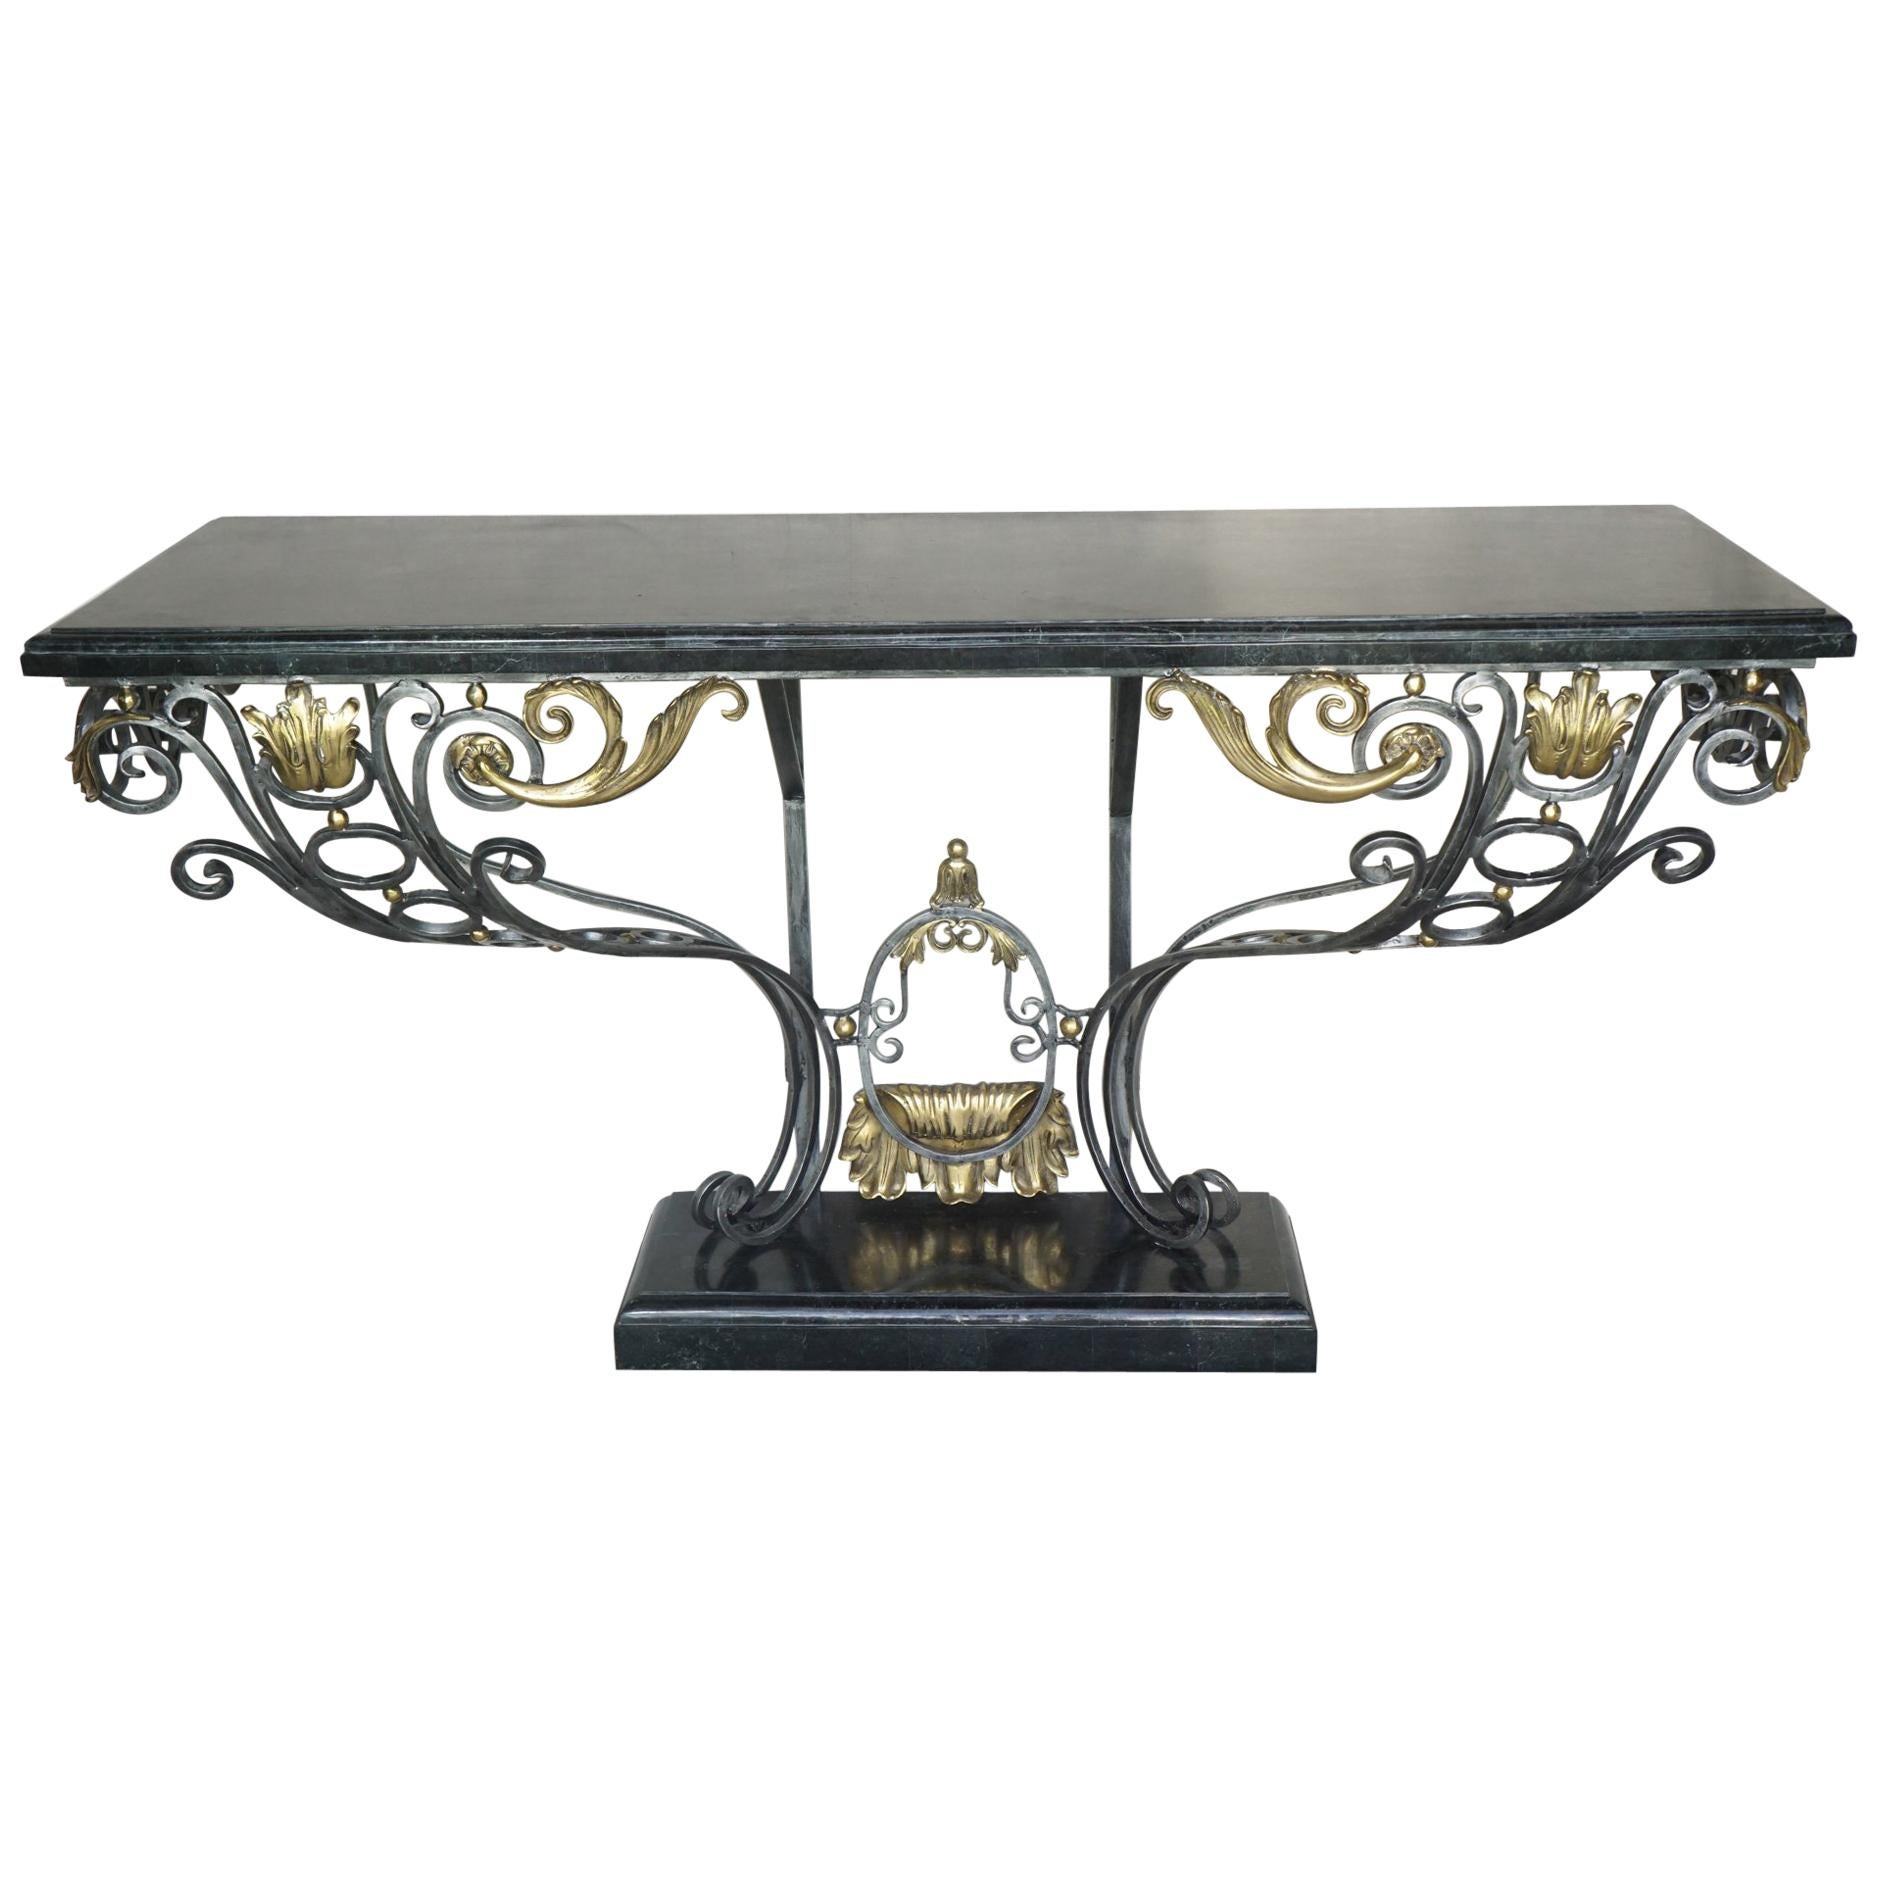 Table console de style Louis XV en acier poli et bronze poli surmonté de marbre